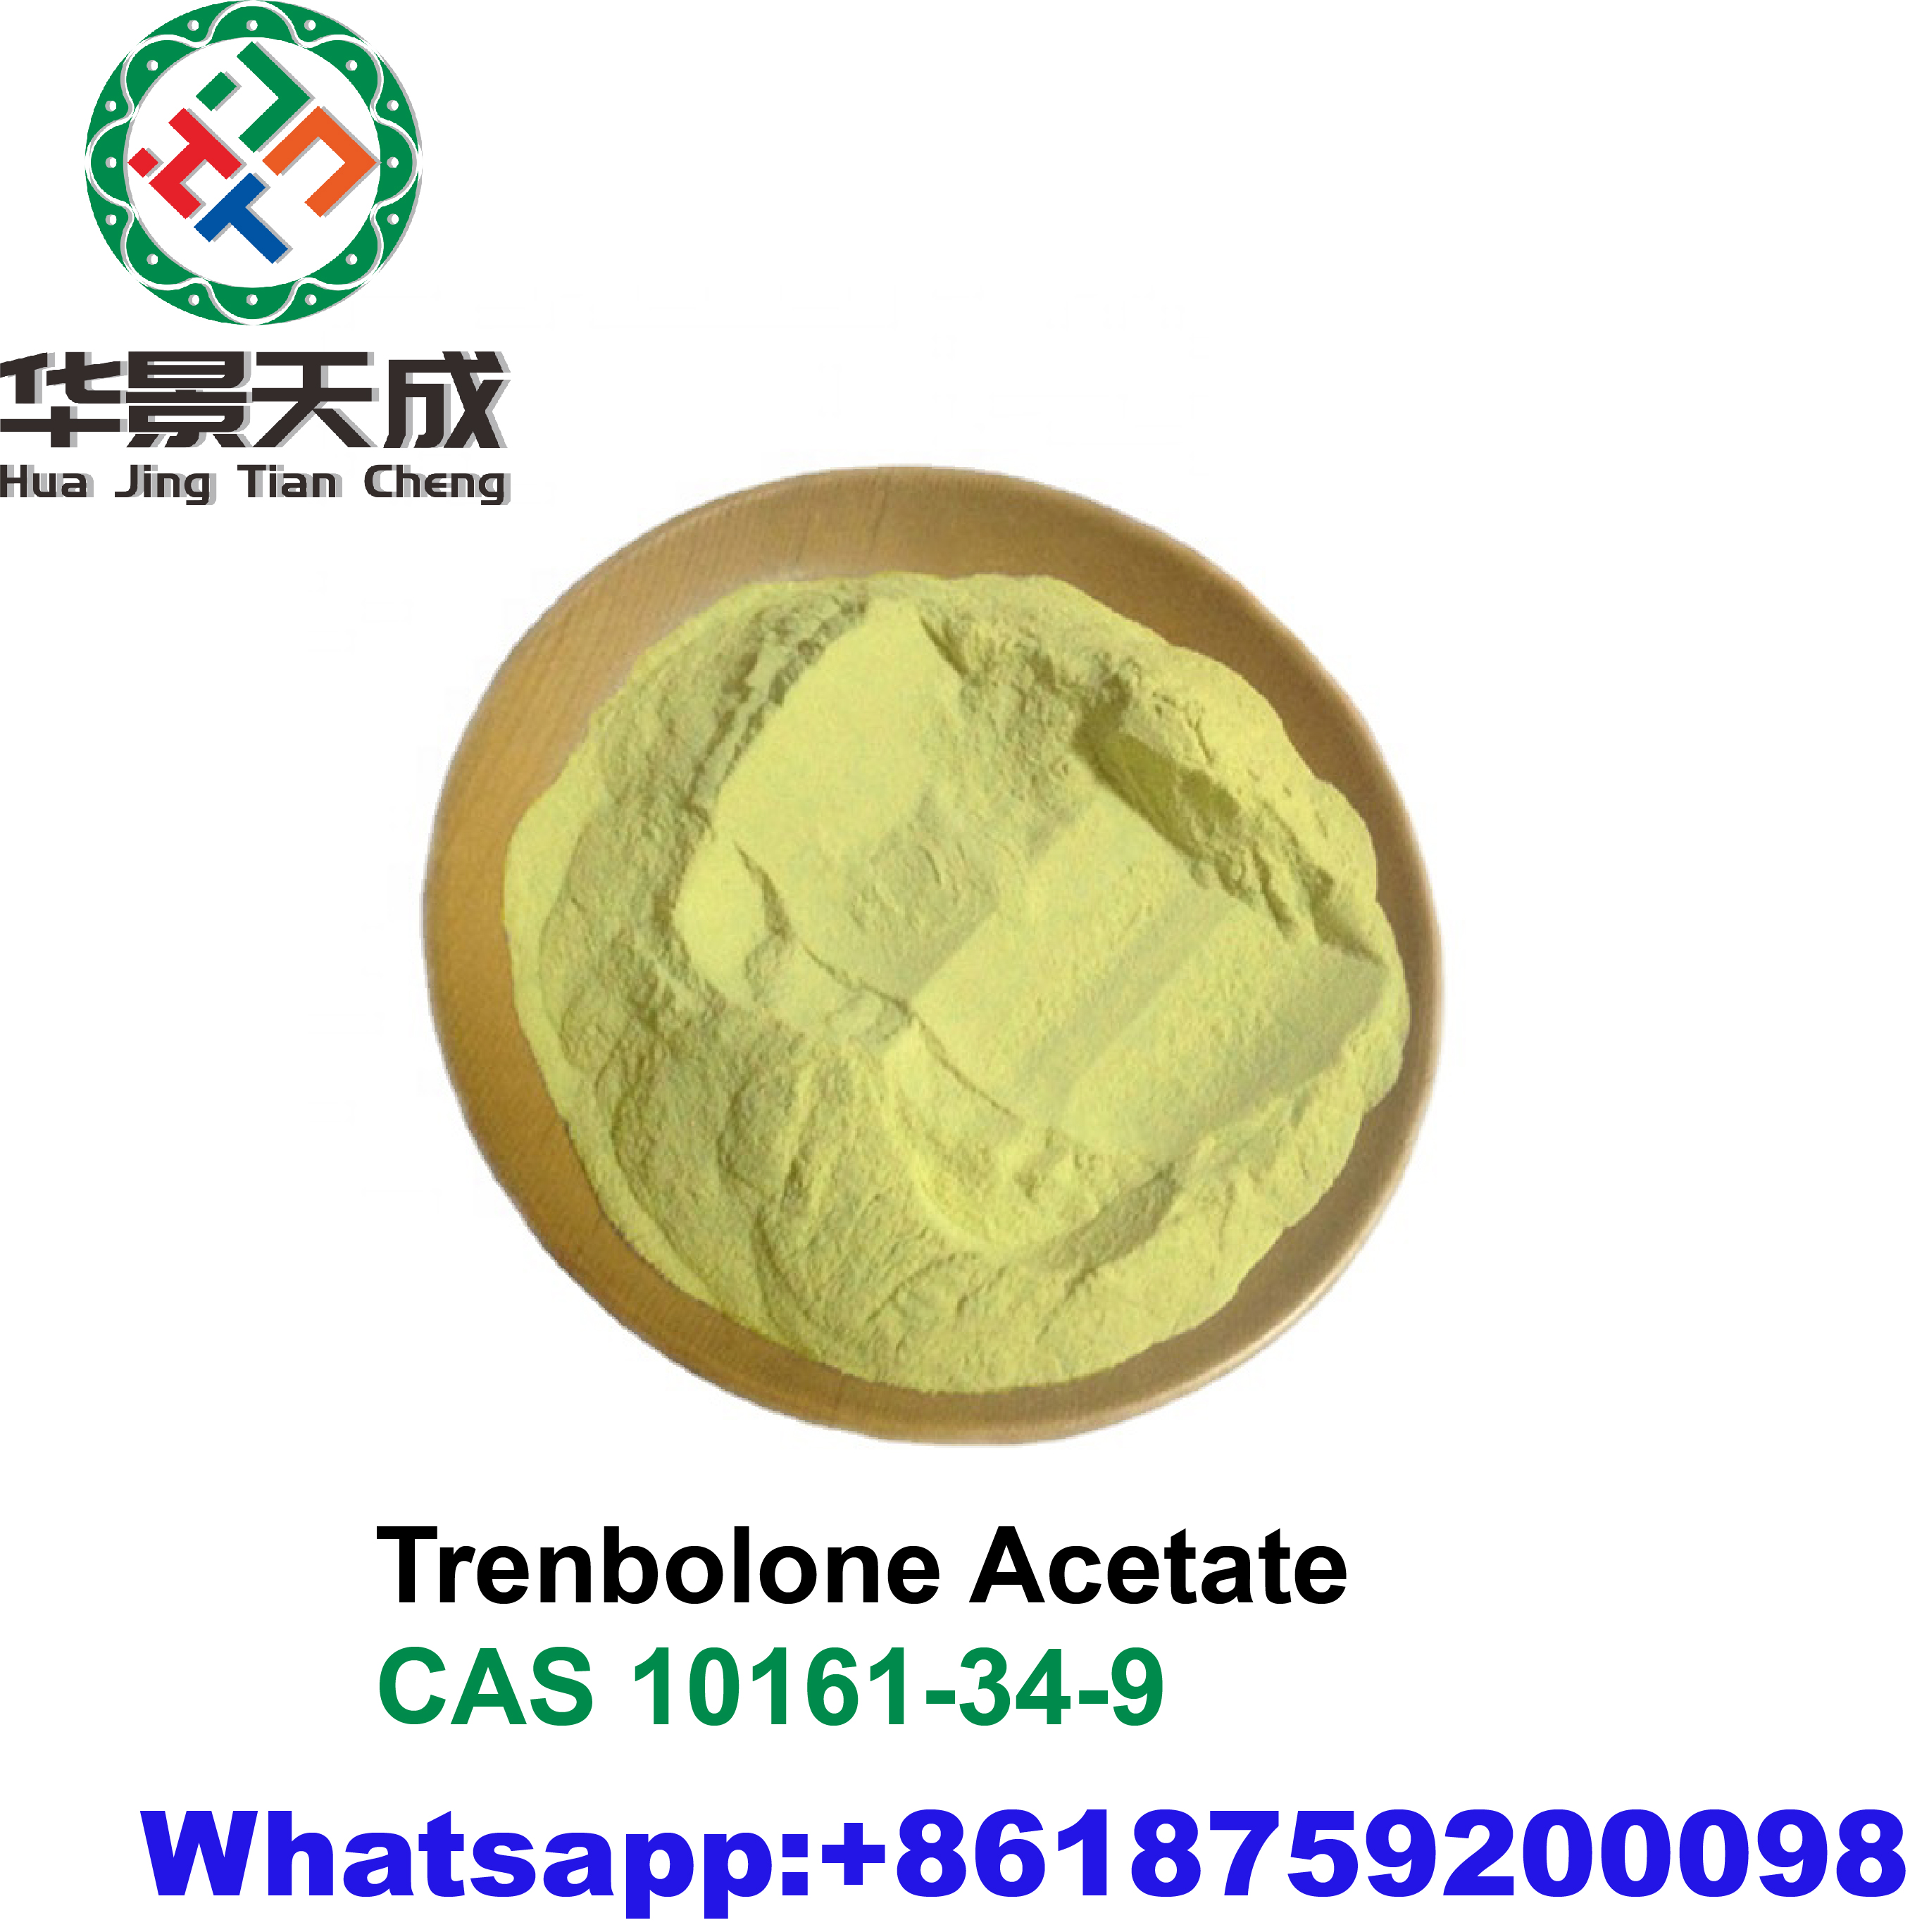 Trenbolone Acetate11